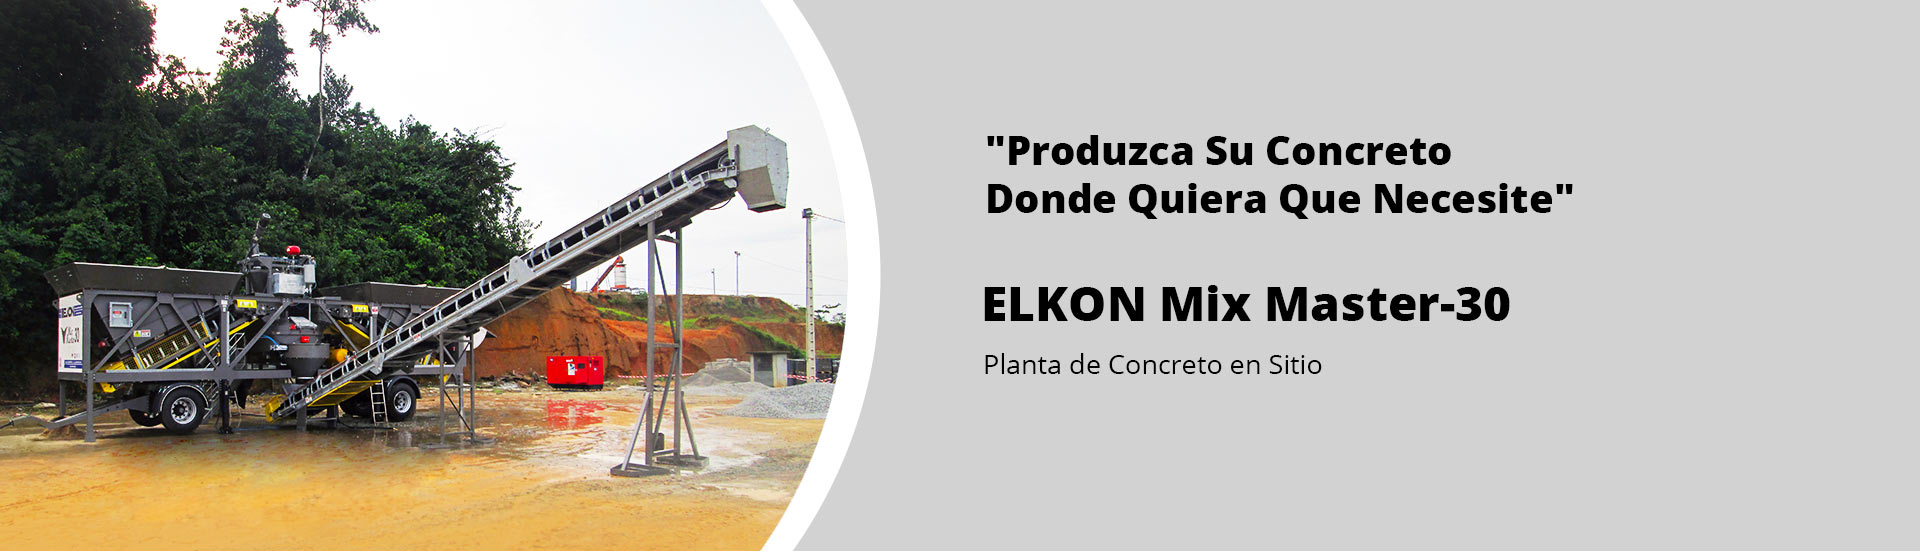 ELKON Mix Master-30 Planta de Concreto en Sitio